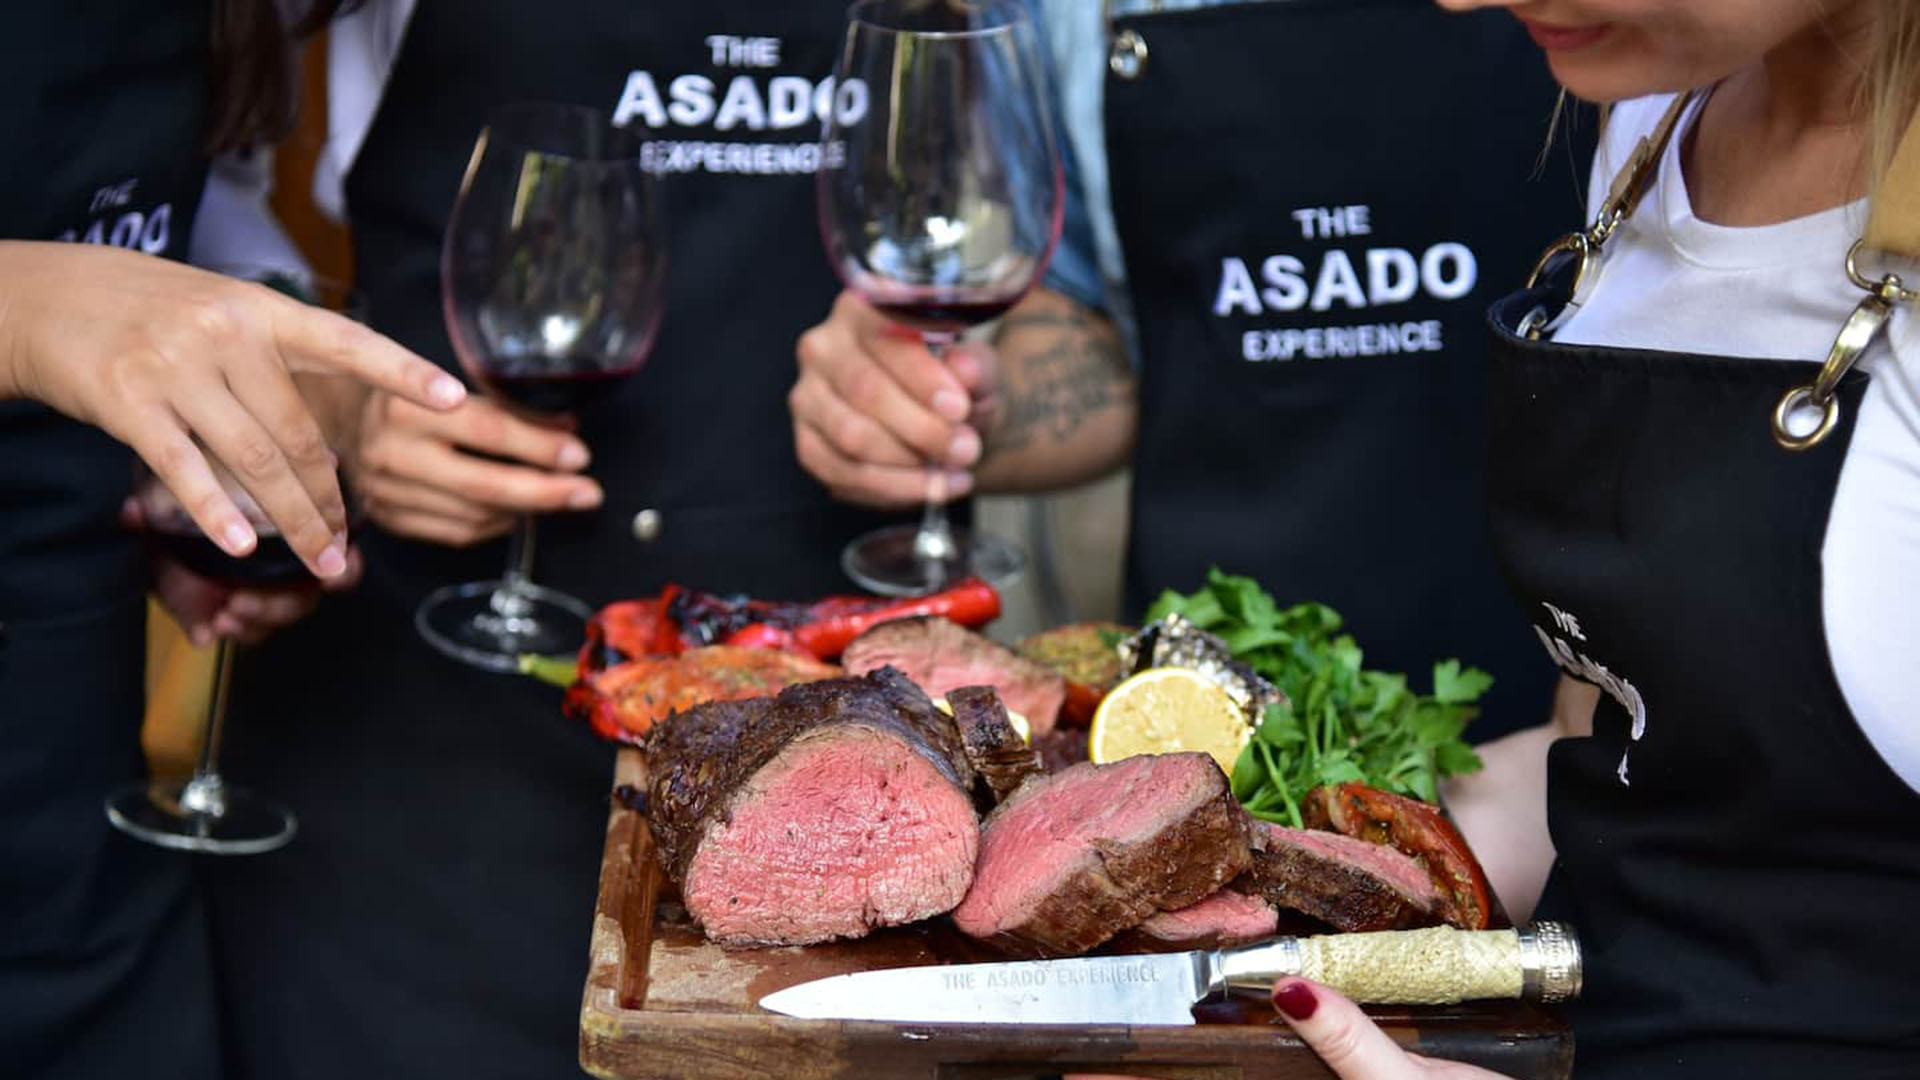 El asado argentino no significa únicamente la mejor carne del mundo, también un ritual de unión repleto de vivencias compartidas (Foto: @the_asado_experience)